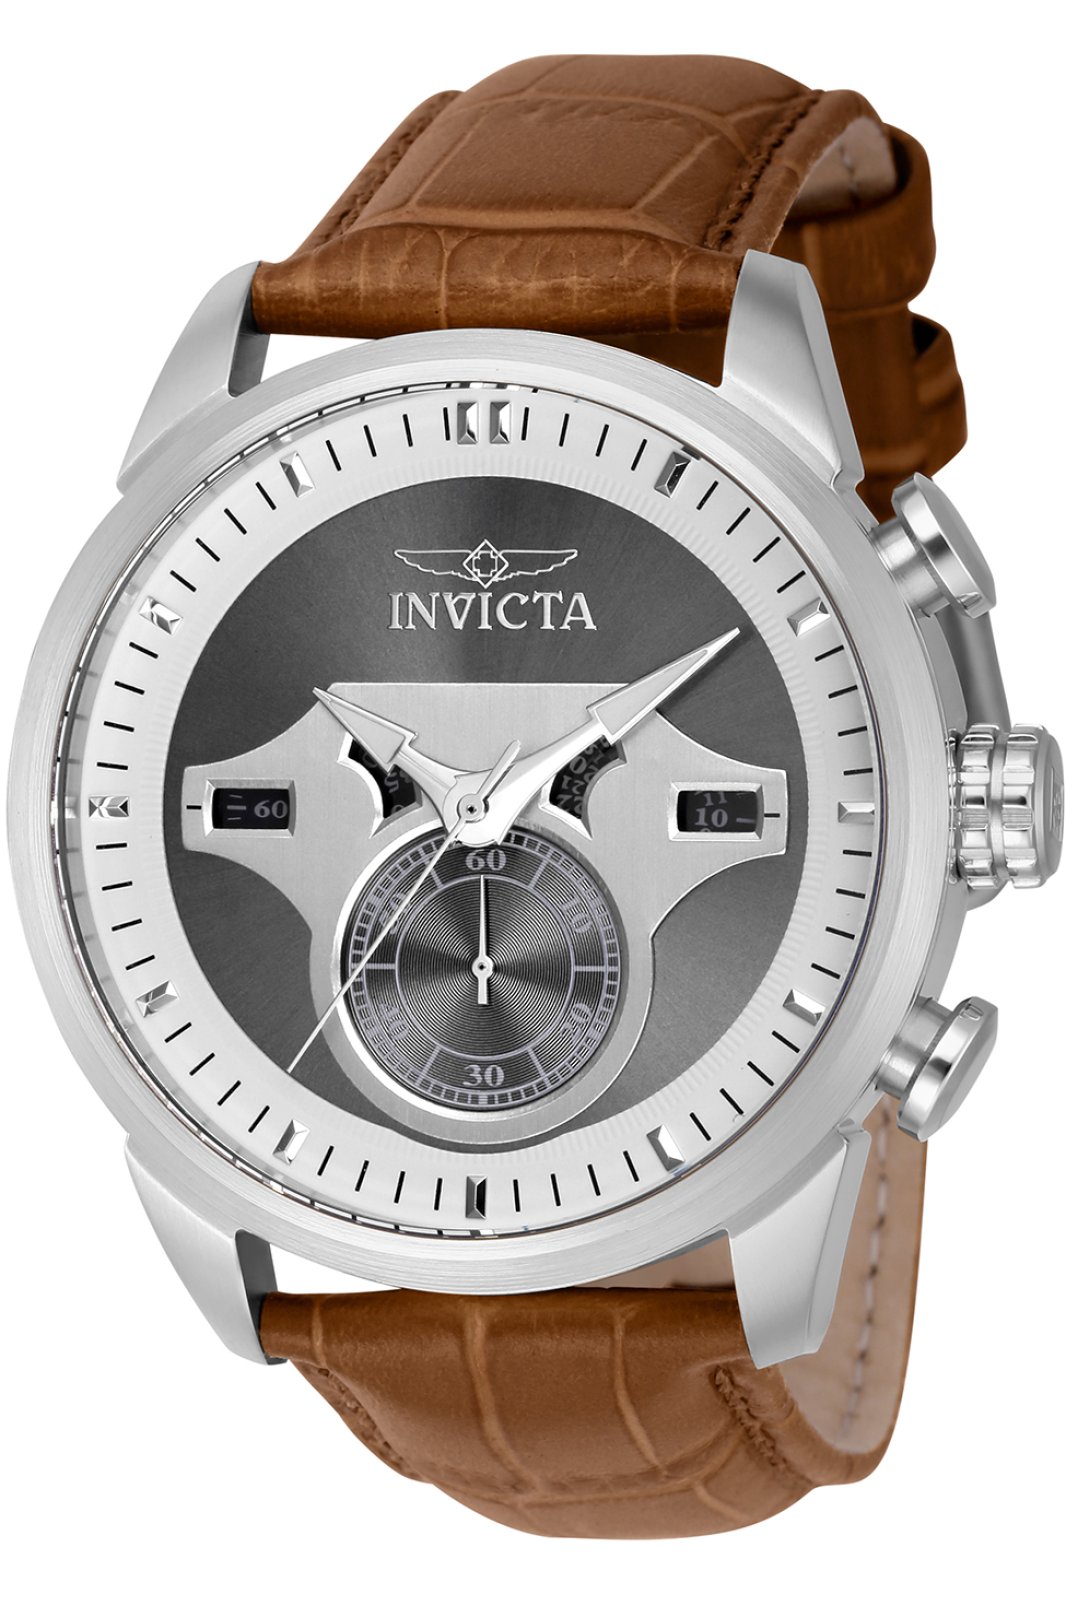 Invicta Objet D Art 43611 Men's Quartz Watch - 46mm